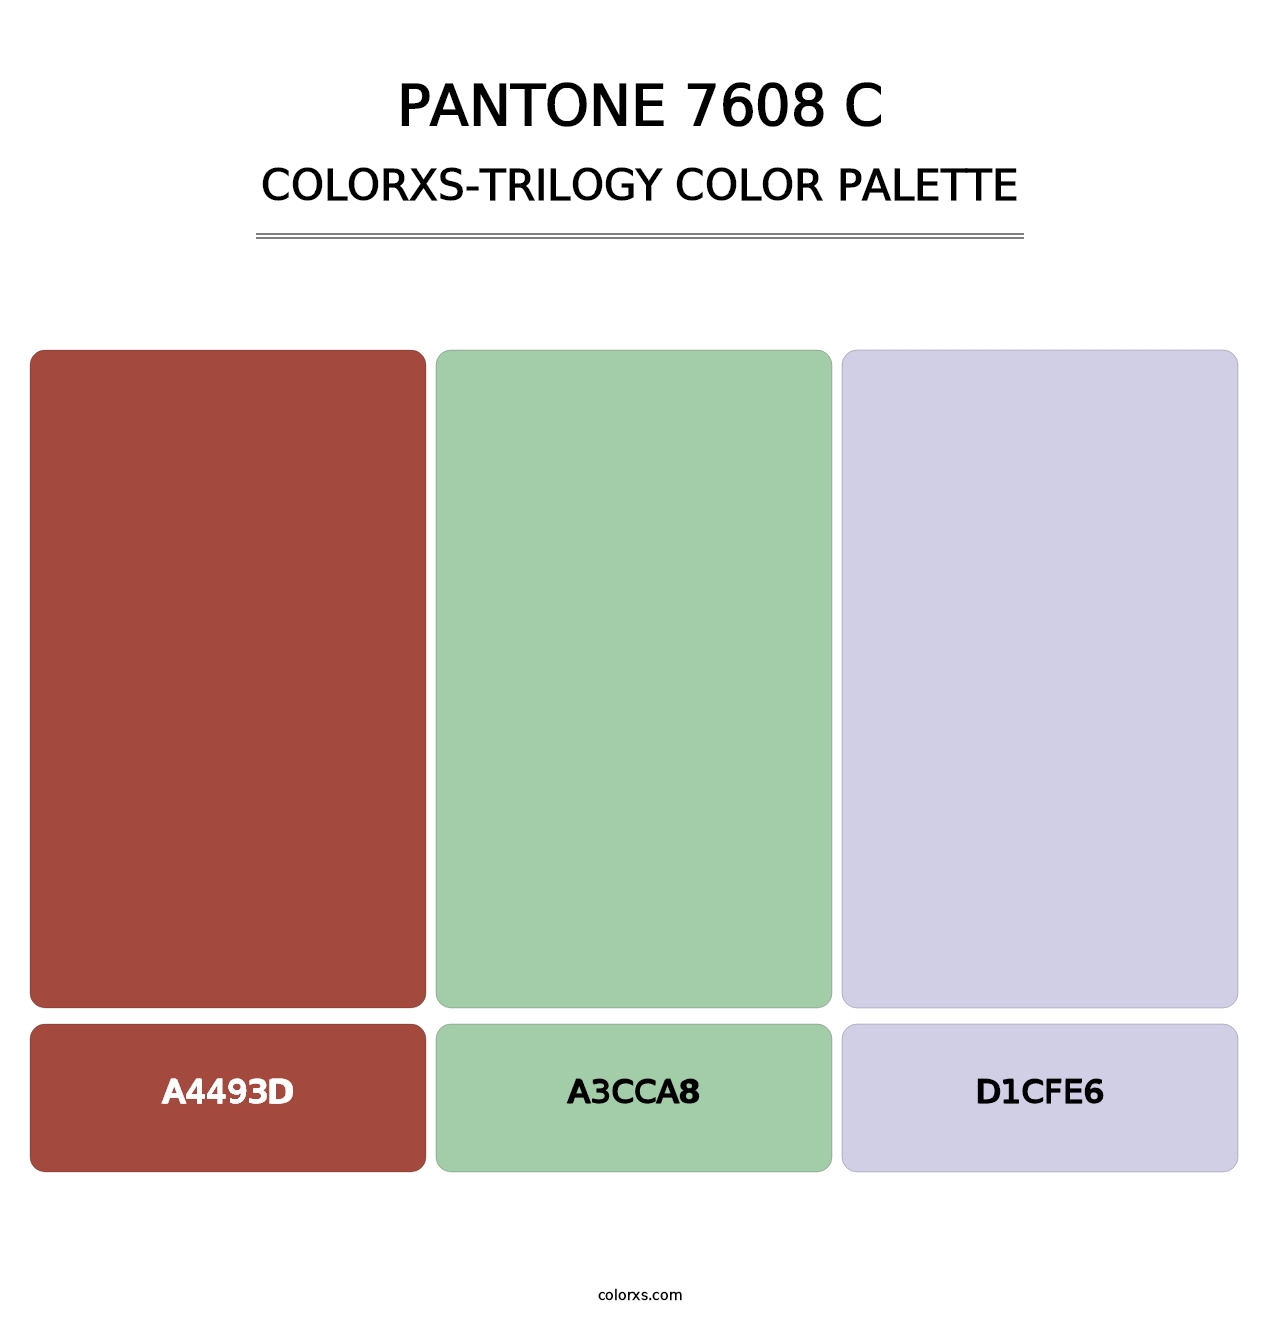 PANTONE 7608 C - Colorxs Trilogy Palette